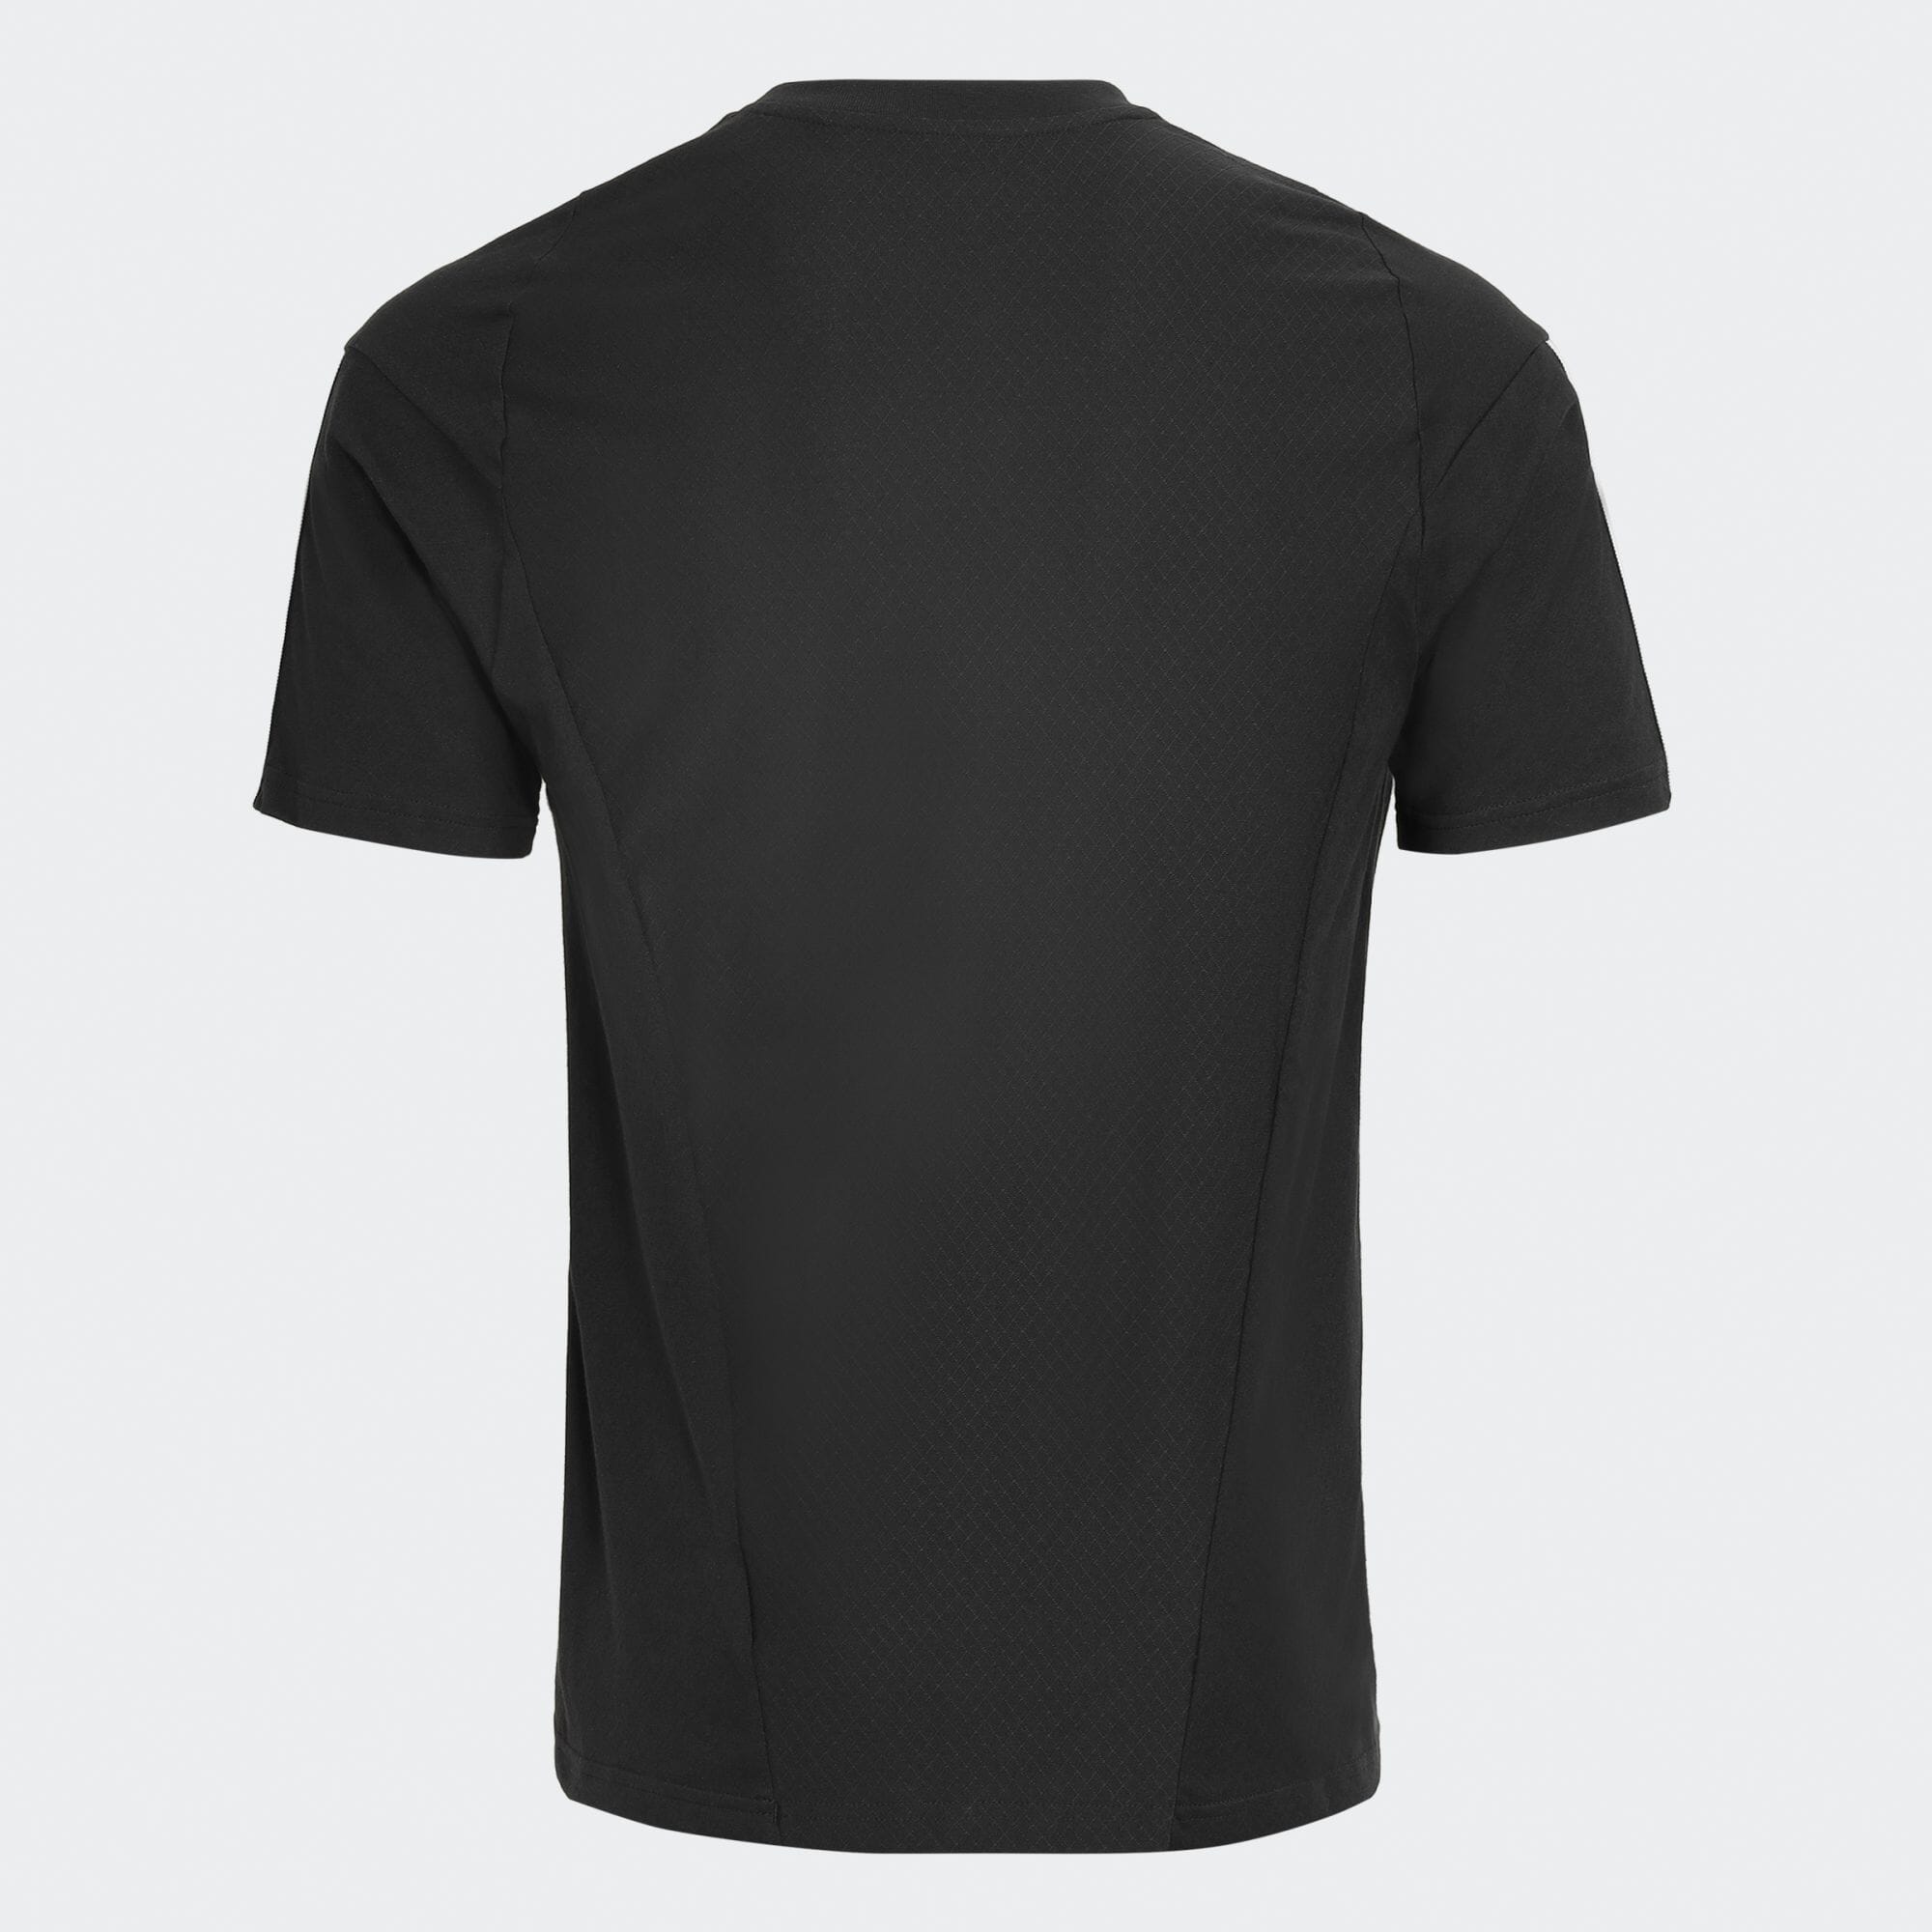 ティロ 23 コンペティション 半袖Tシャツ メンズ サッカー|フットサル